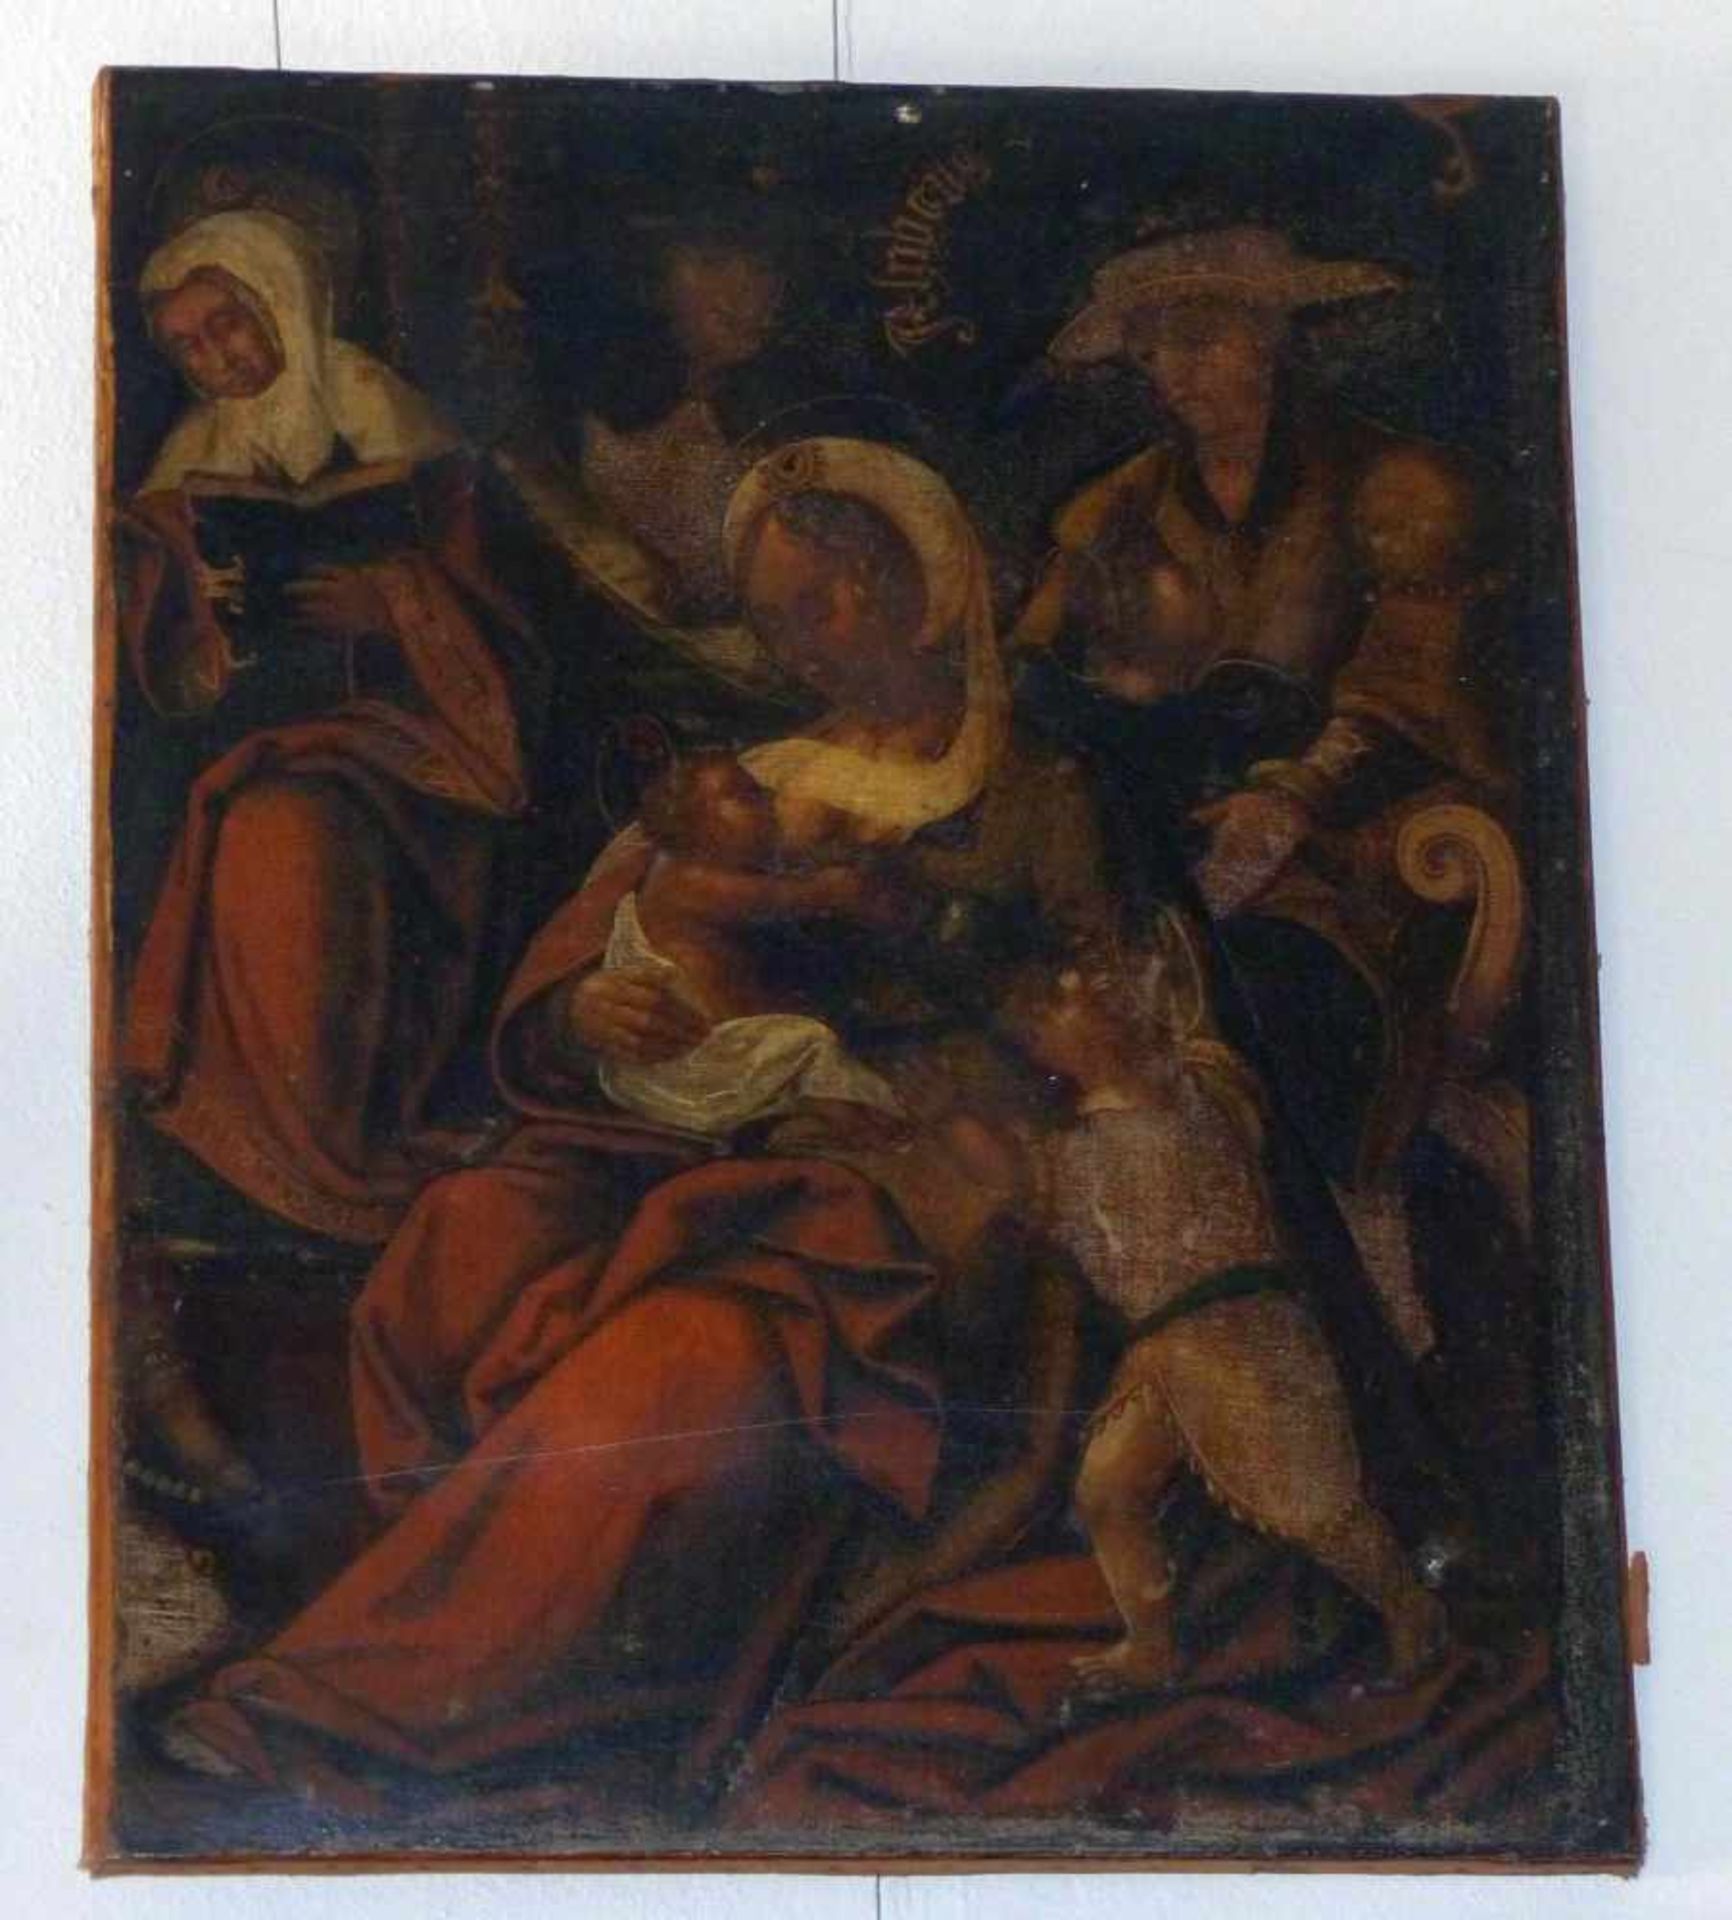 Maria lactans umgeben von HeiligenWohl Italien, 17. Jh.Öl/Lwd., randdoubl. 66 x 53 cm; unger. - - Bild 2 aus 2